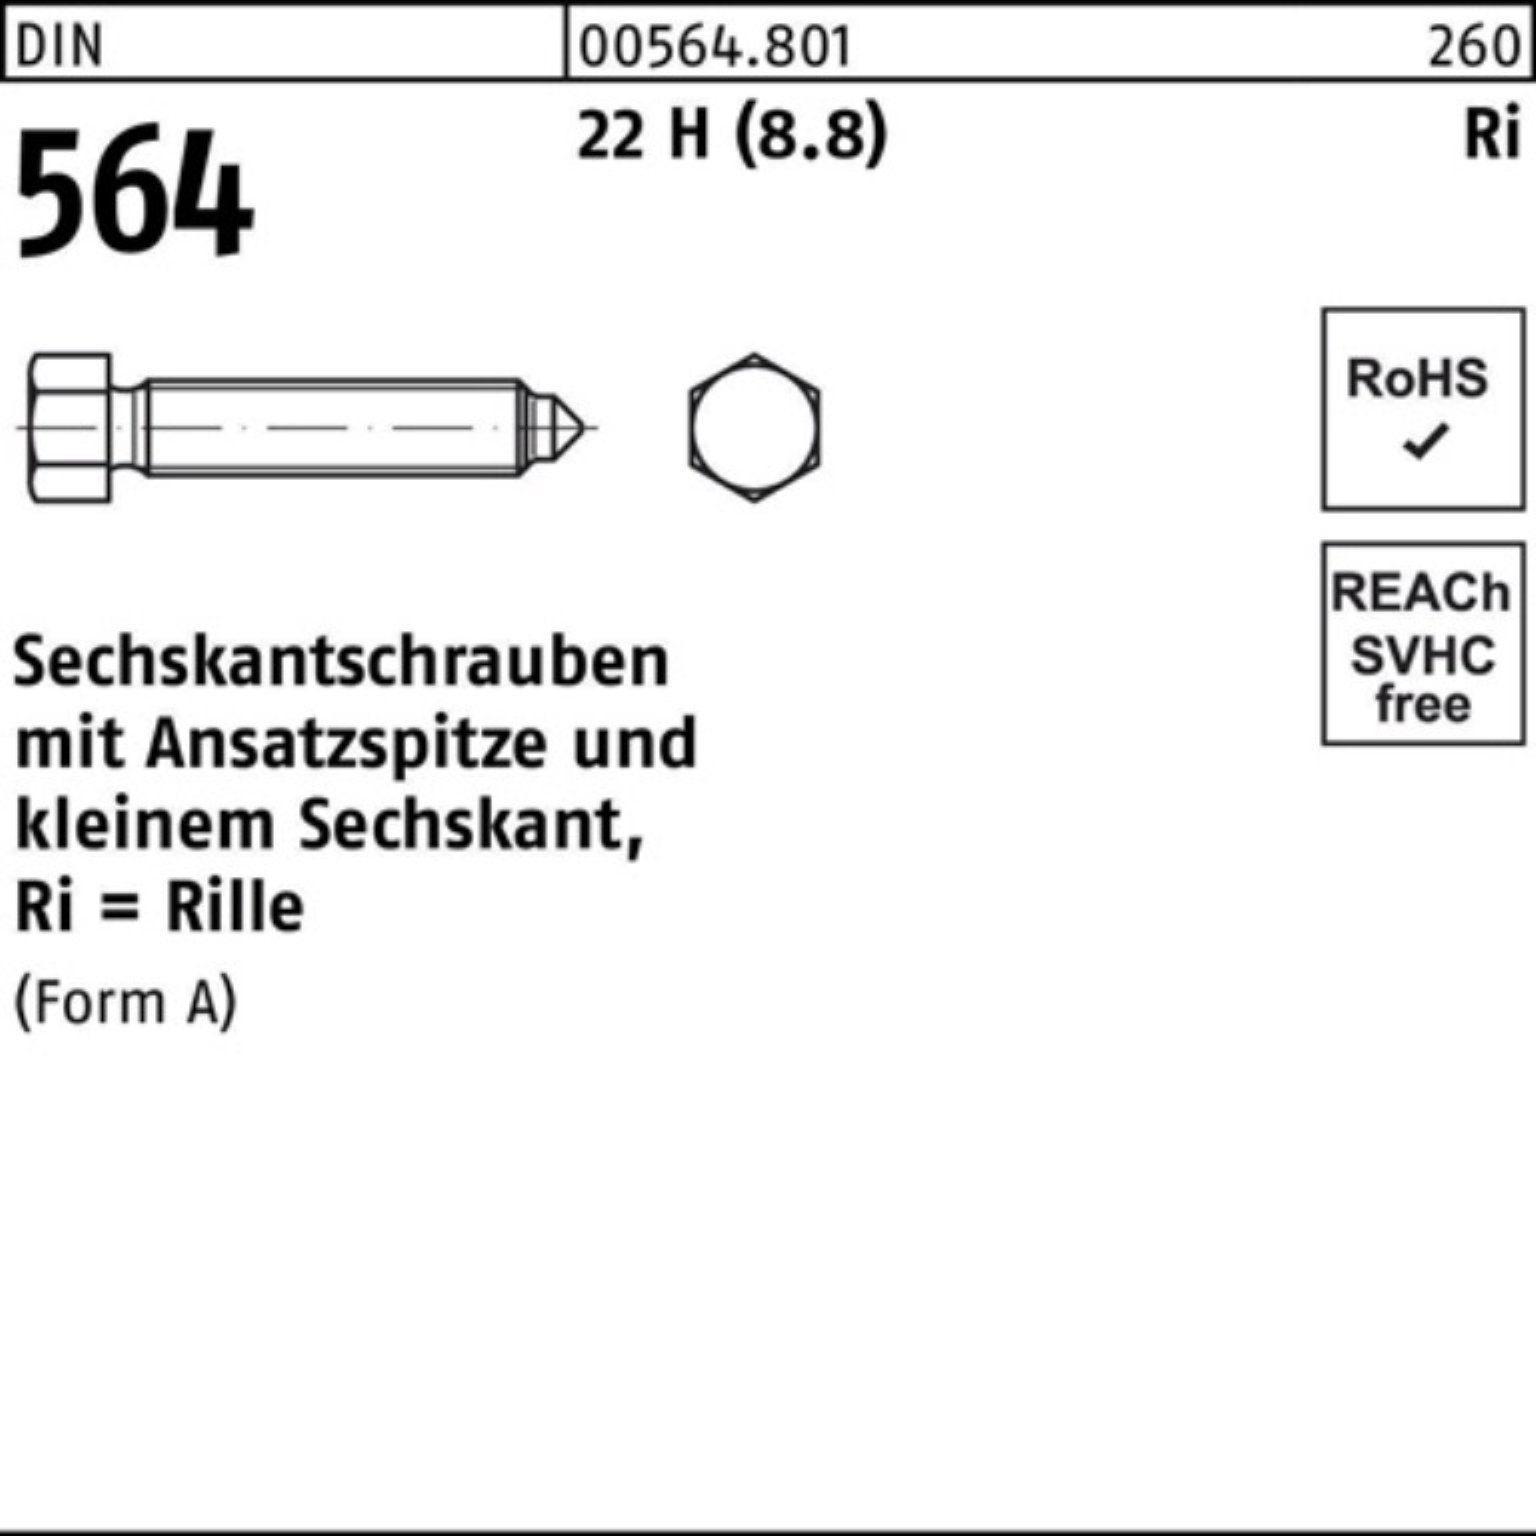 (8.8) Sechskantschraube Sechskantschraube Pack H 22 12x Ansatzspitze 564 DIN 100er Reyher 60 AM